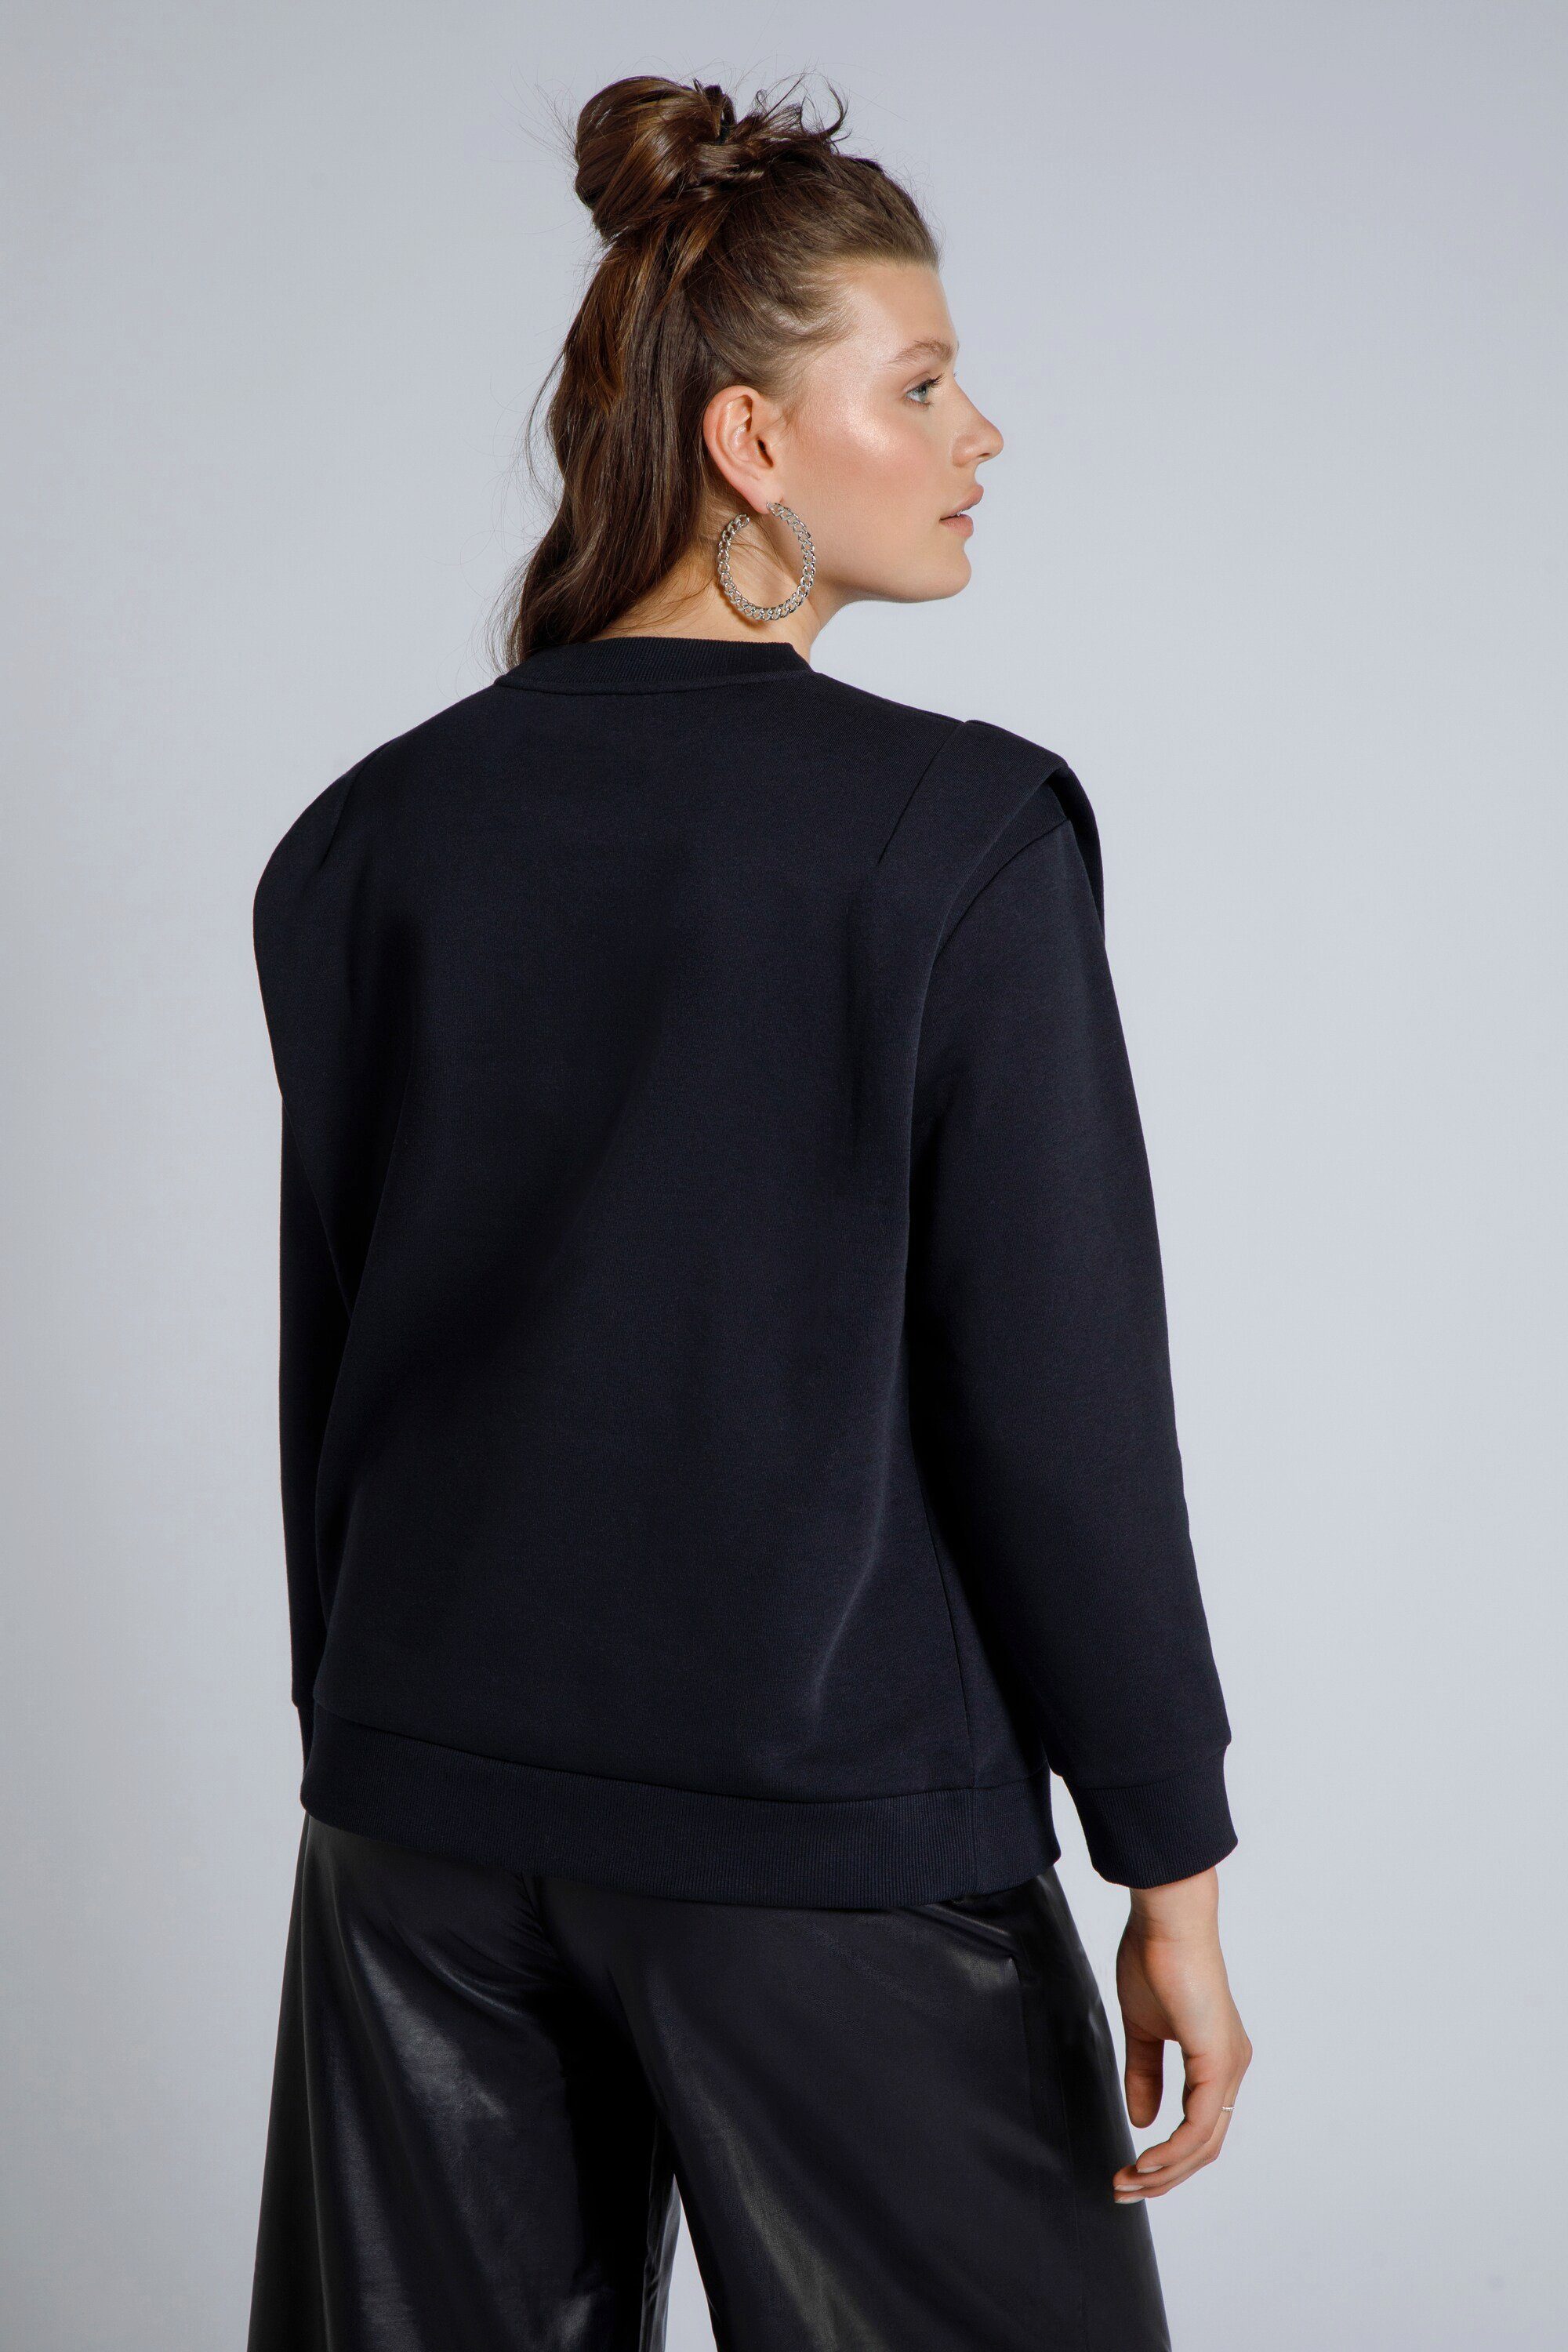 Damen Pullover Studio Untold Sweatshirt Sweatshirt oversized Rundhals Langarm